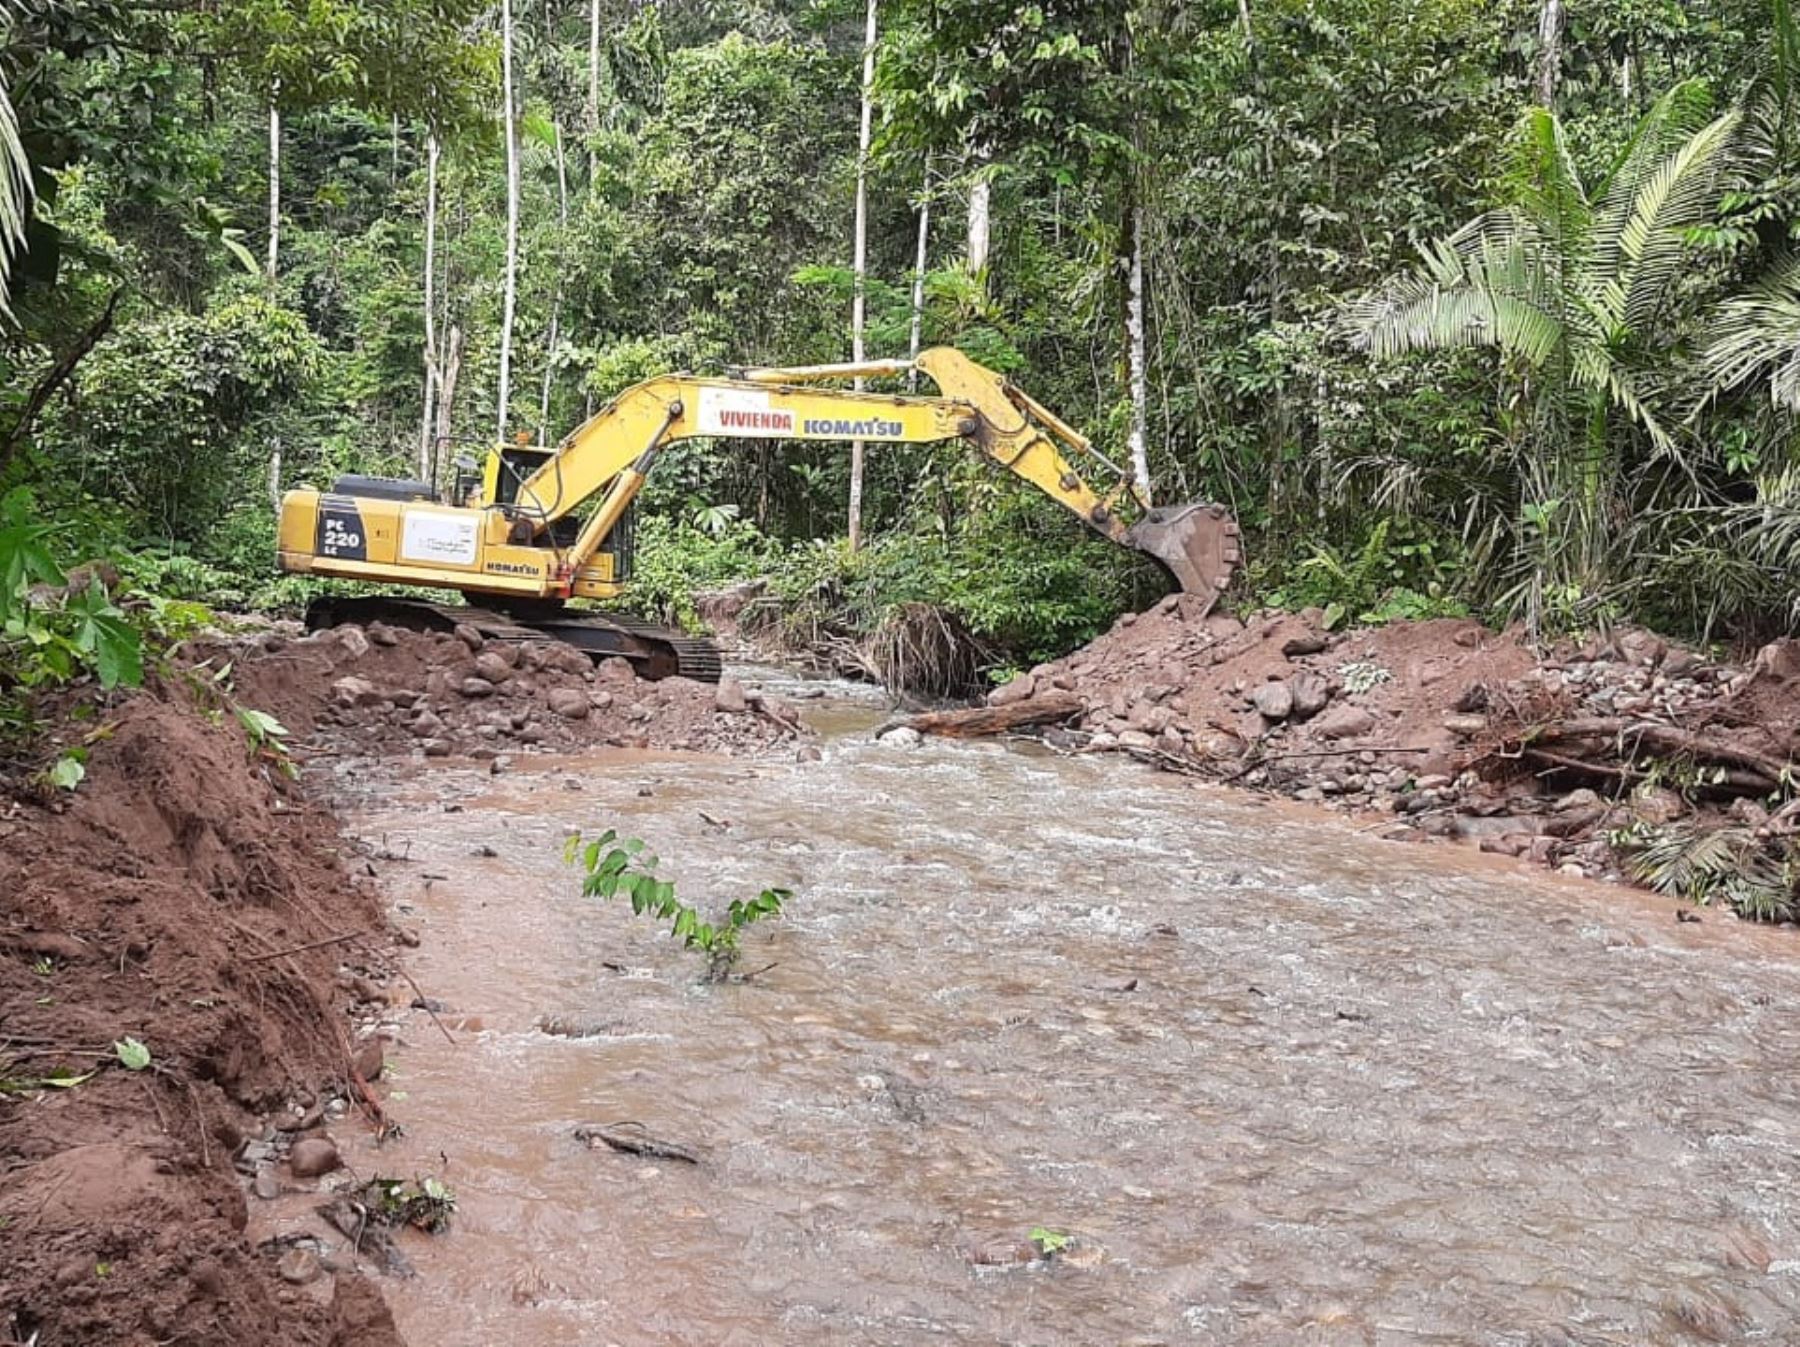 Culminan trabajos de limpieza y descolmatación de la quebrada Seasme, ubicada en el distrito de Nieva, región Amazonas, que evitarán posibles desbordes e inundaciones, informó el Ministerio de Vivienda. ANDINA/Difusión